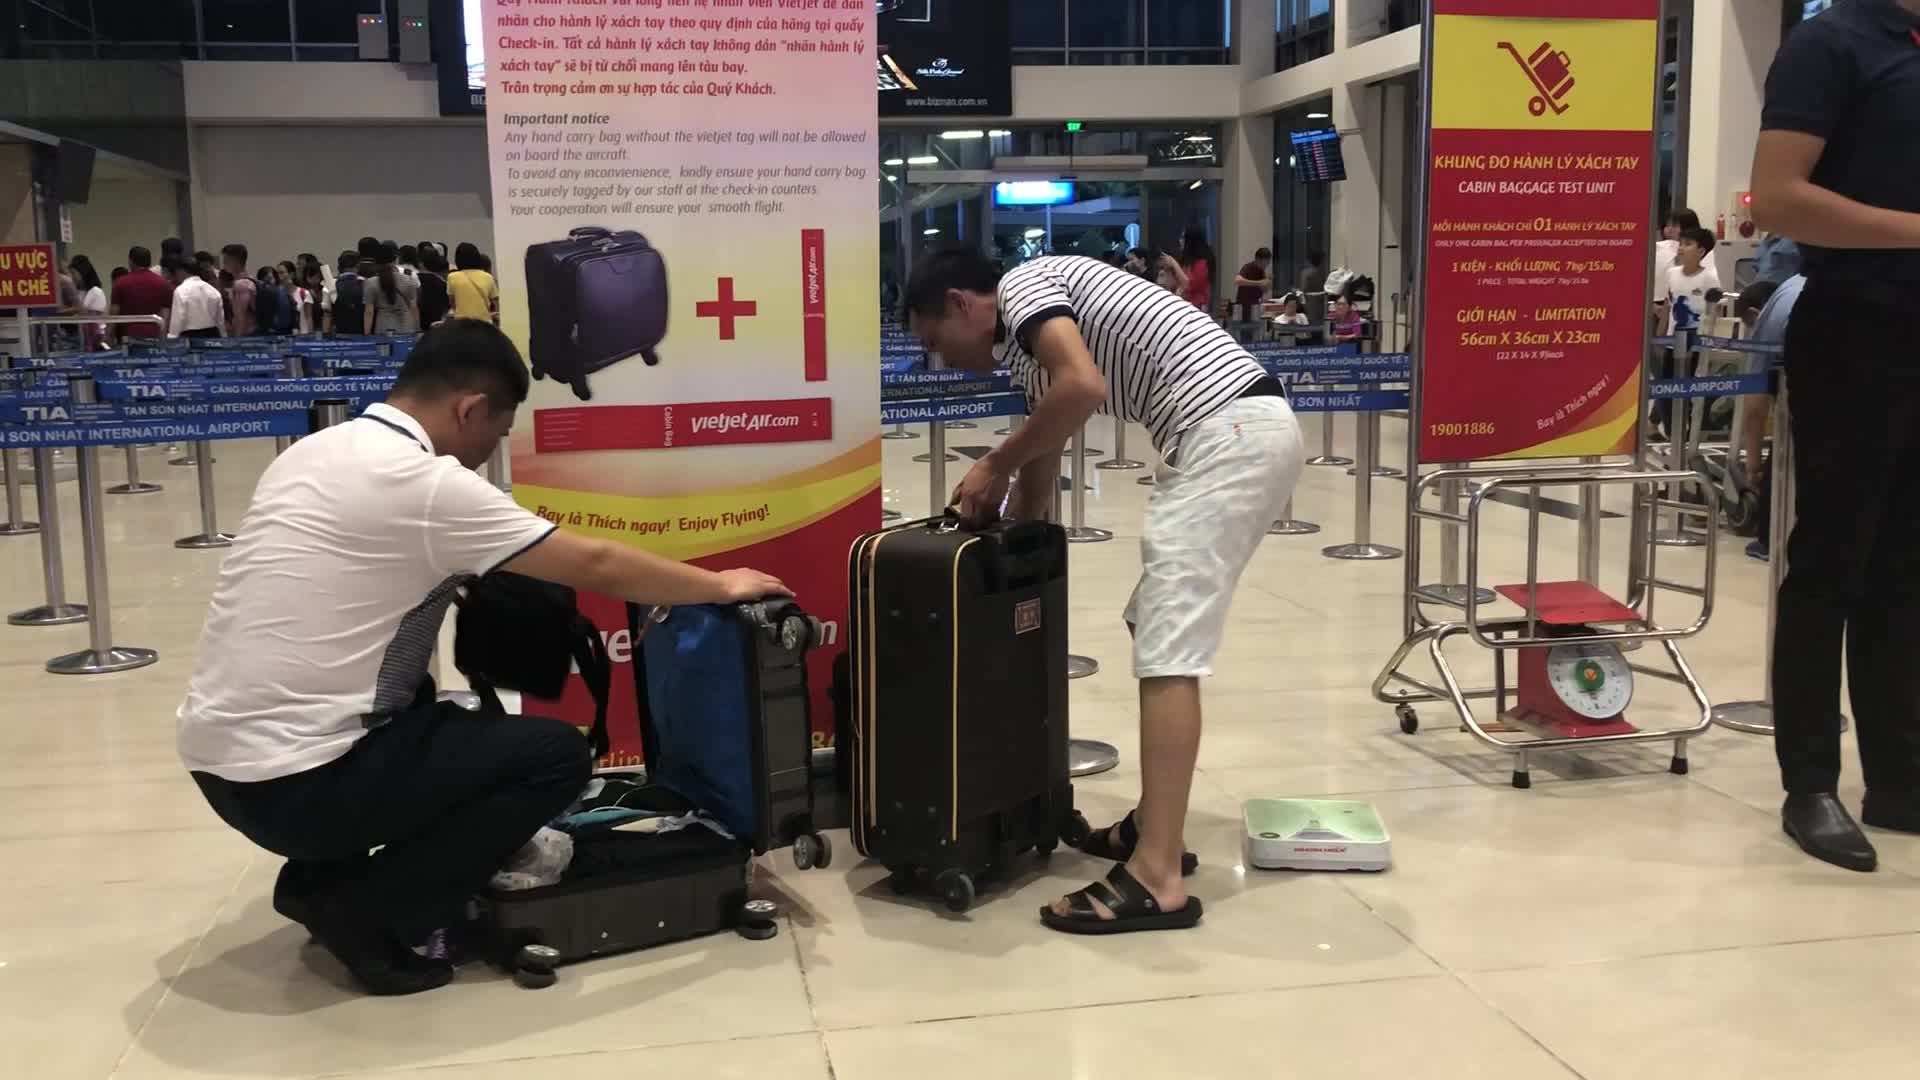 Khi mang theo trong hành lý xách tay, hành khách vẫn phải tuân thủ theo các quy định của từng hãng hàng không